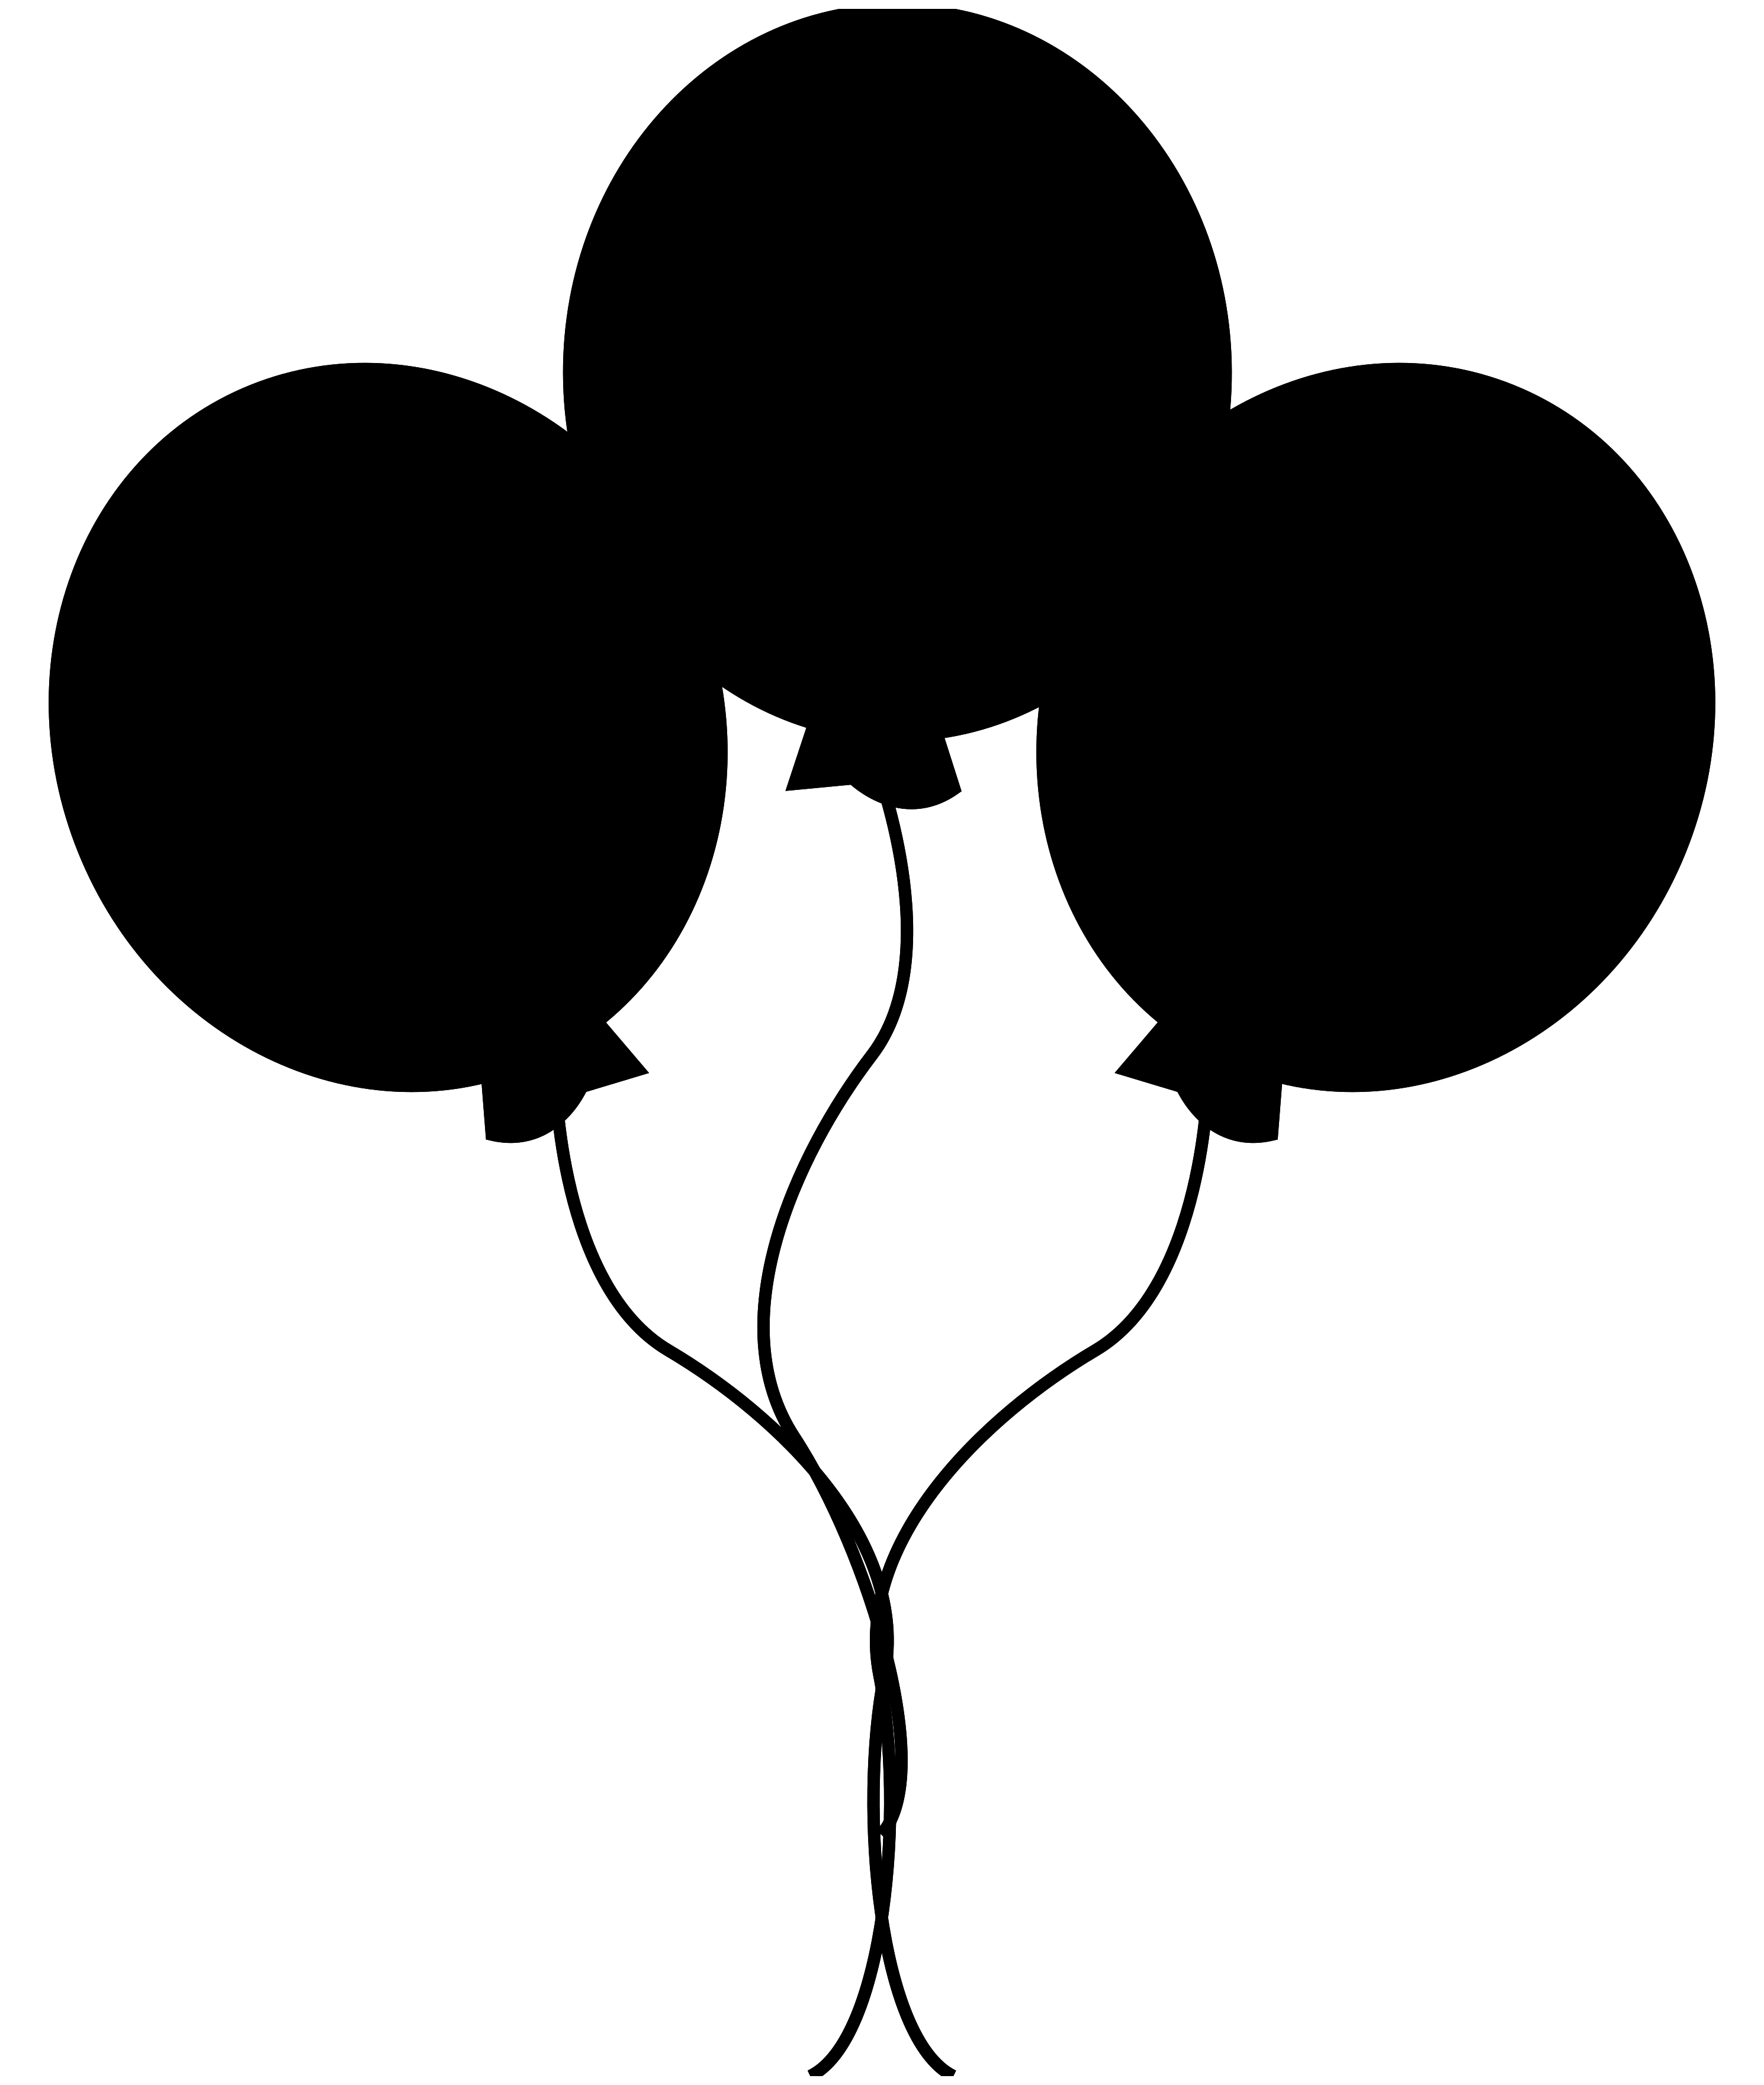 Balon hitam PNG Gambar latar belakang Transparan